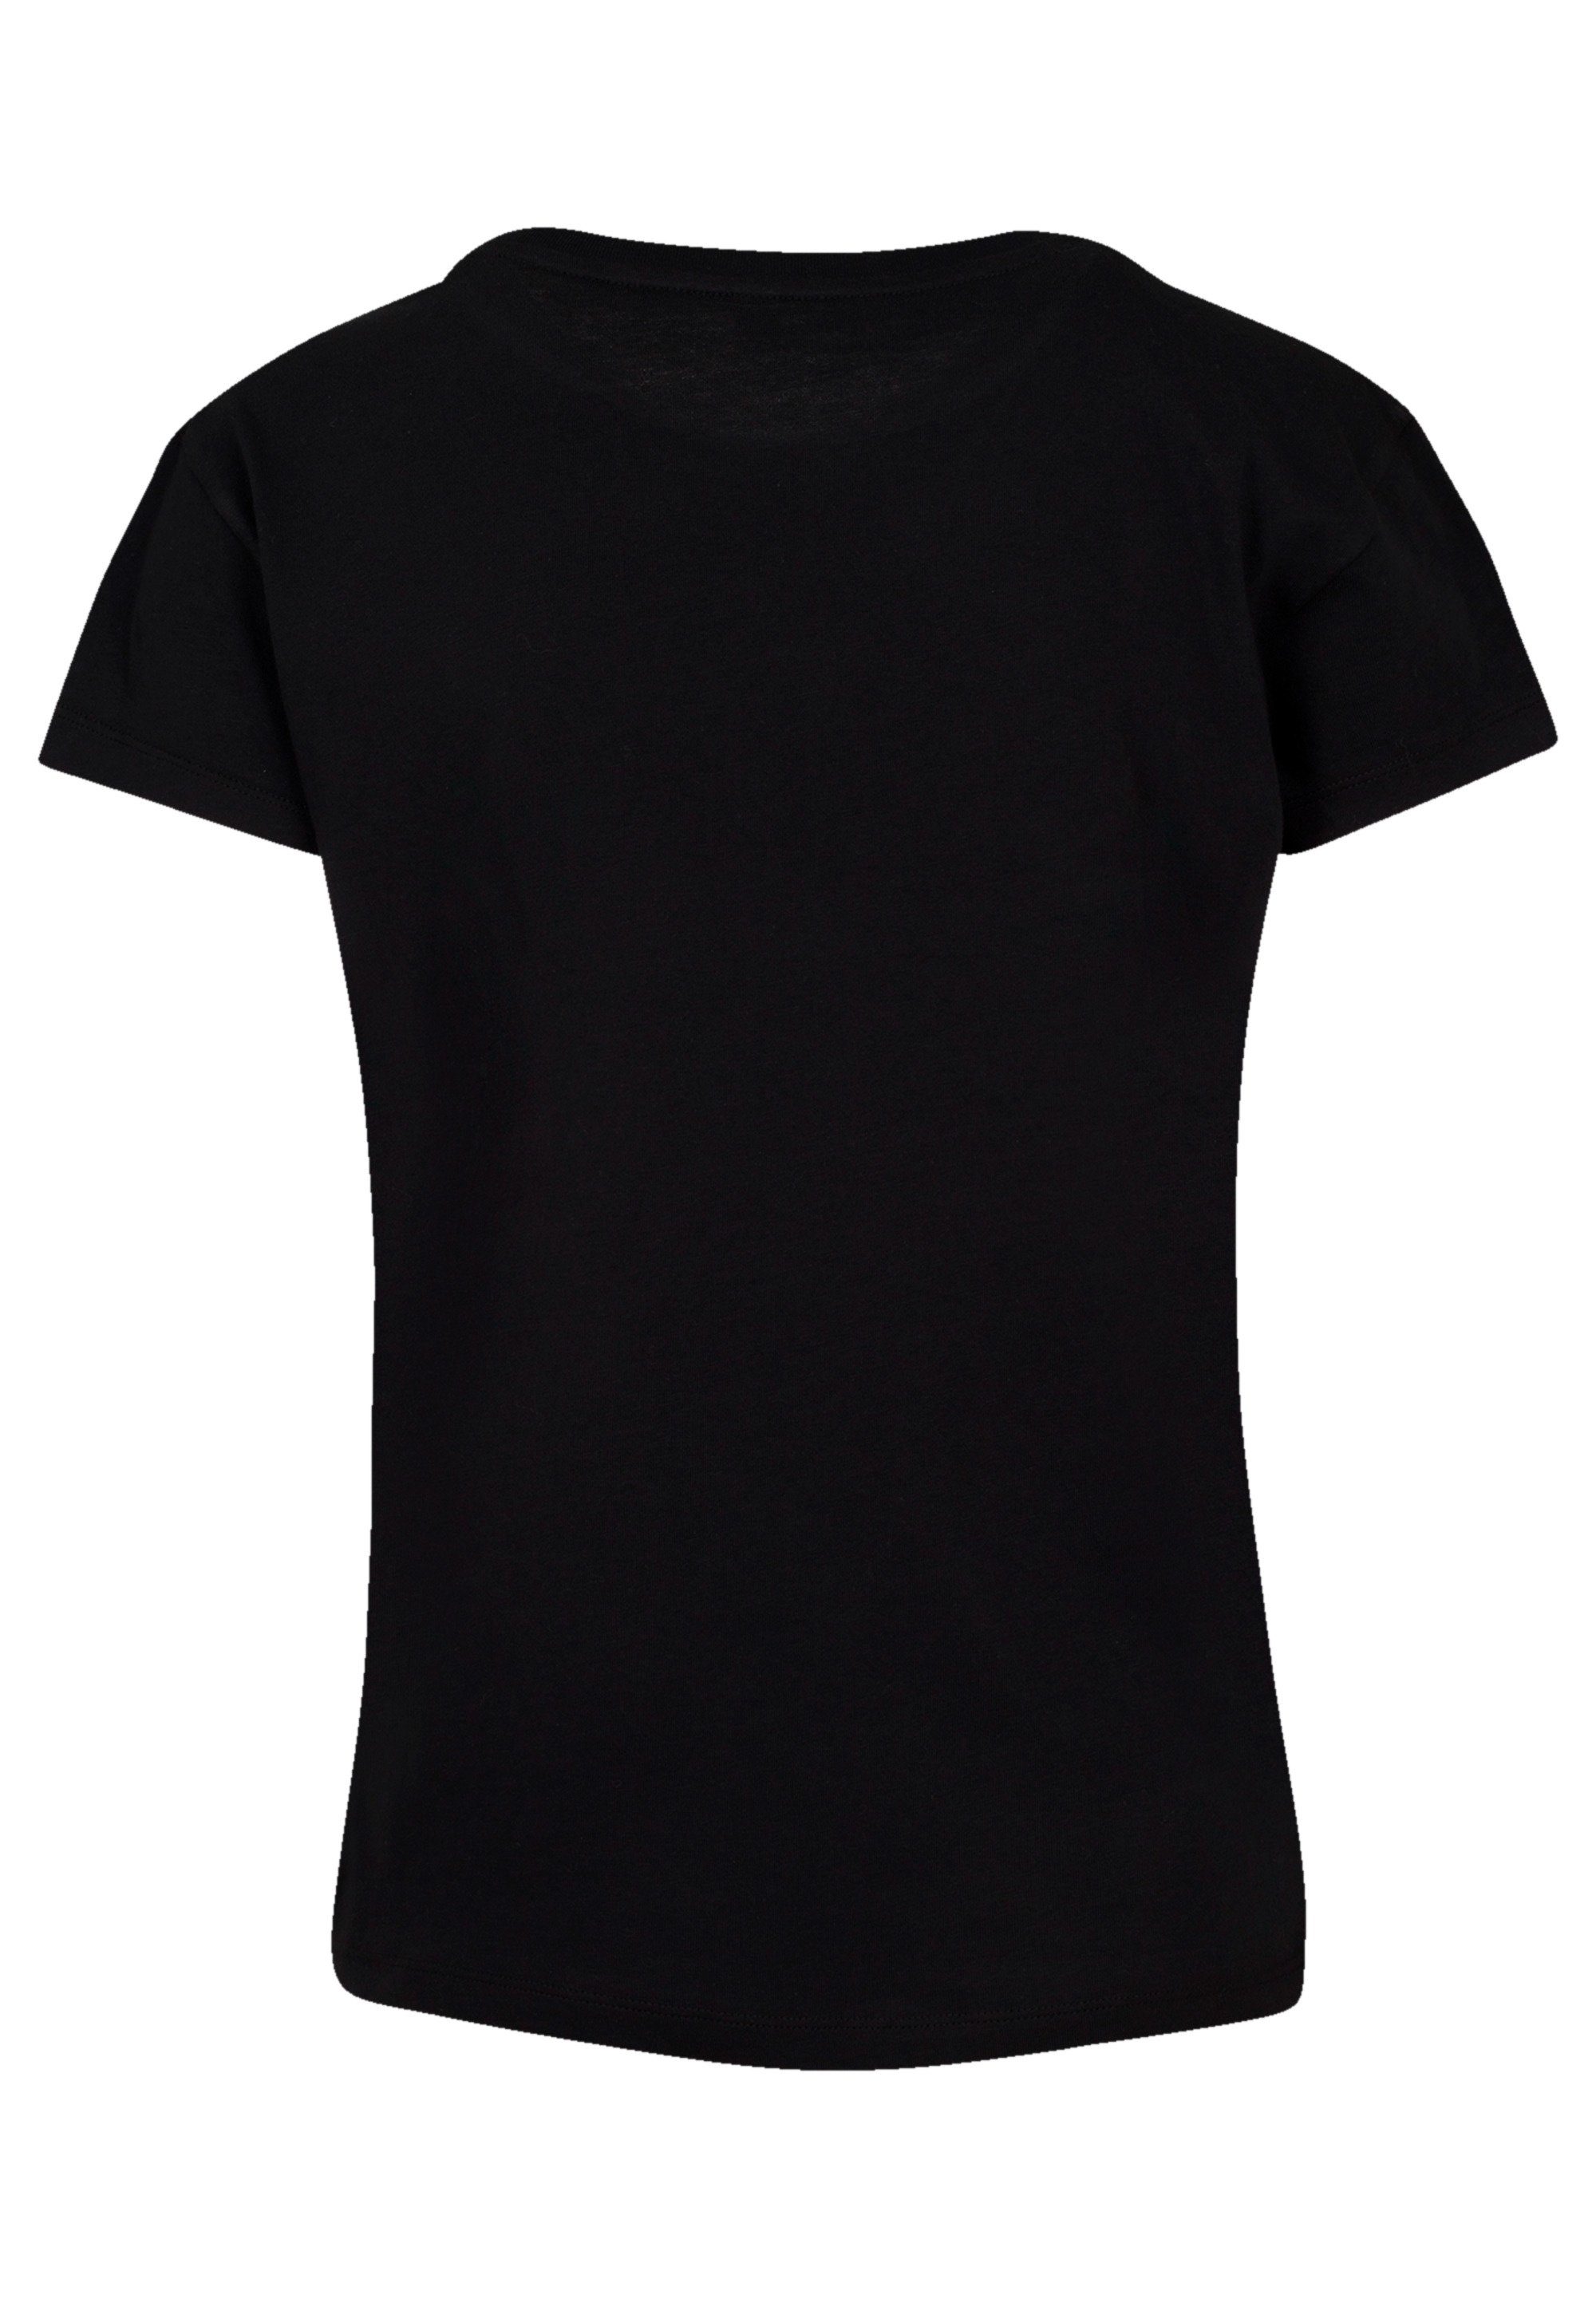 Perfekte Peter Premium Head Qualität, Passform und Neverland Verarbeitung To Pan Disney hochwertige F4NT4STIC T-Shirt